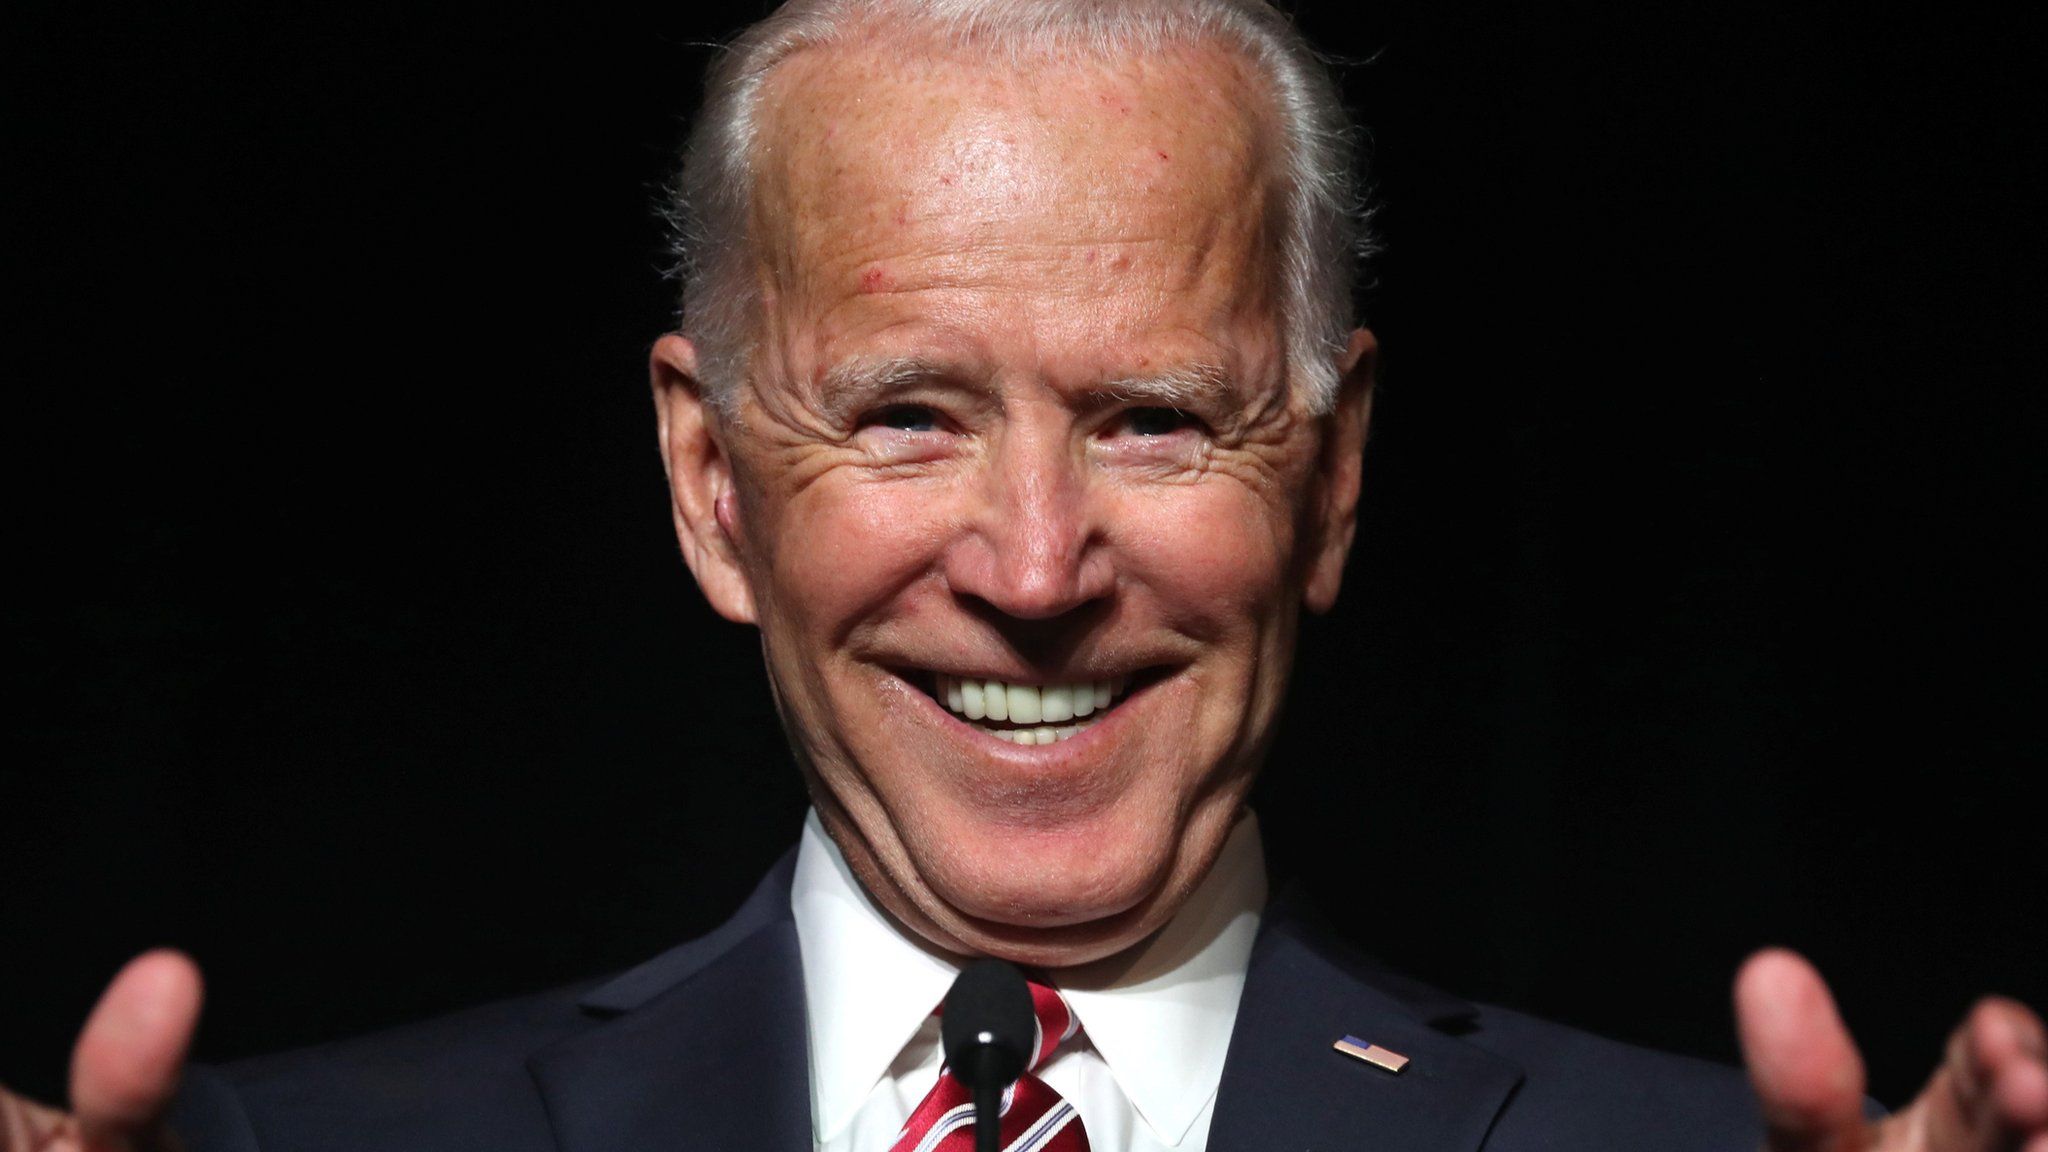 Joe Biden in Delaware